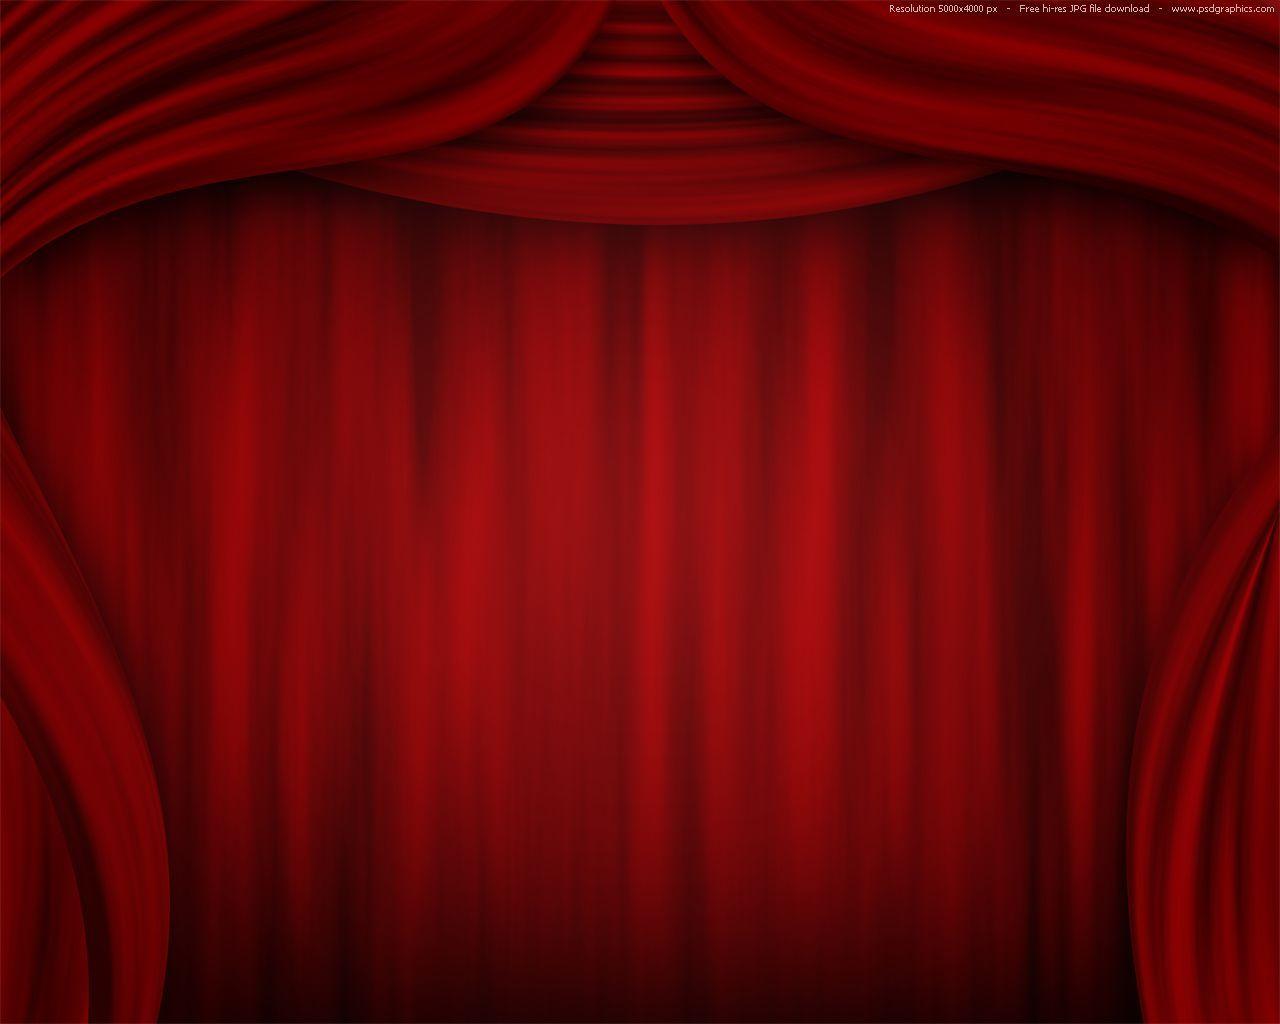 1280x1024 Nền rèm đỏ, sân khấu nhà hát.  Rèm đỏ, Rèm sân khấu, Rèm trang trí